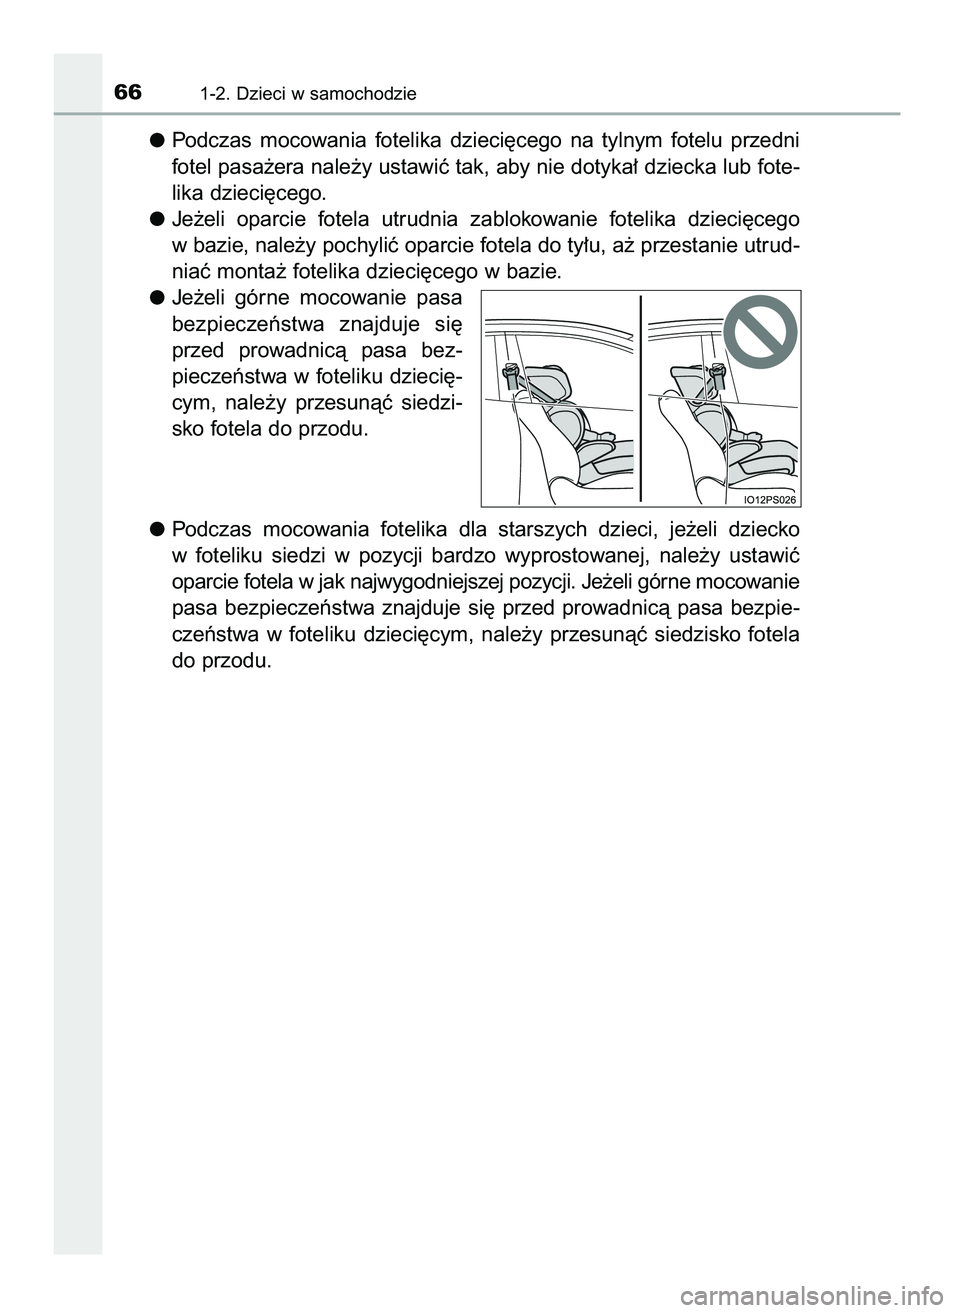 TOYOTA PRIUS PLUG-IN HYBRID 2021  Instrukcja obsługi (in Polish) Podczas  mocowania  fotelika  dzieci´cego  na  tylnym  fotelu  przedni
fotel pasa˝era nale˝y ustawiç tak, aby nie dotyka∏ dziecka lub fote-
lika dzieci´cego.
Je˝eli  oparcie  fotela  utrudnia 